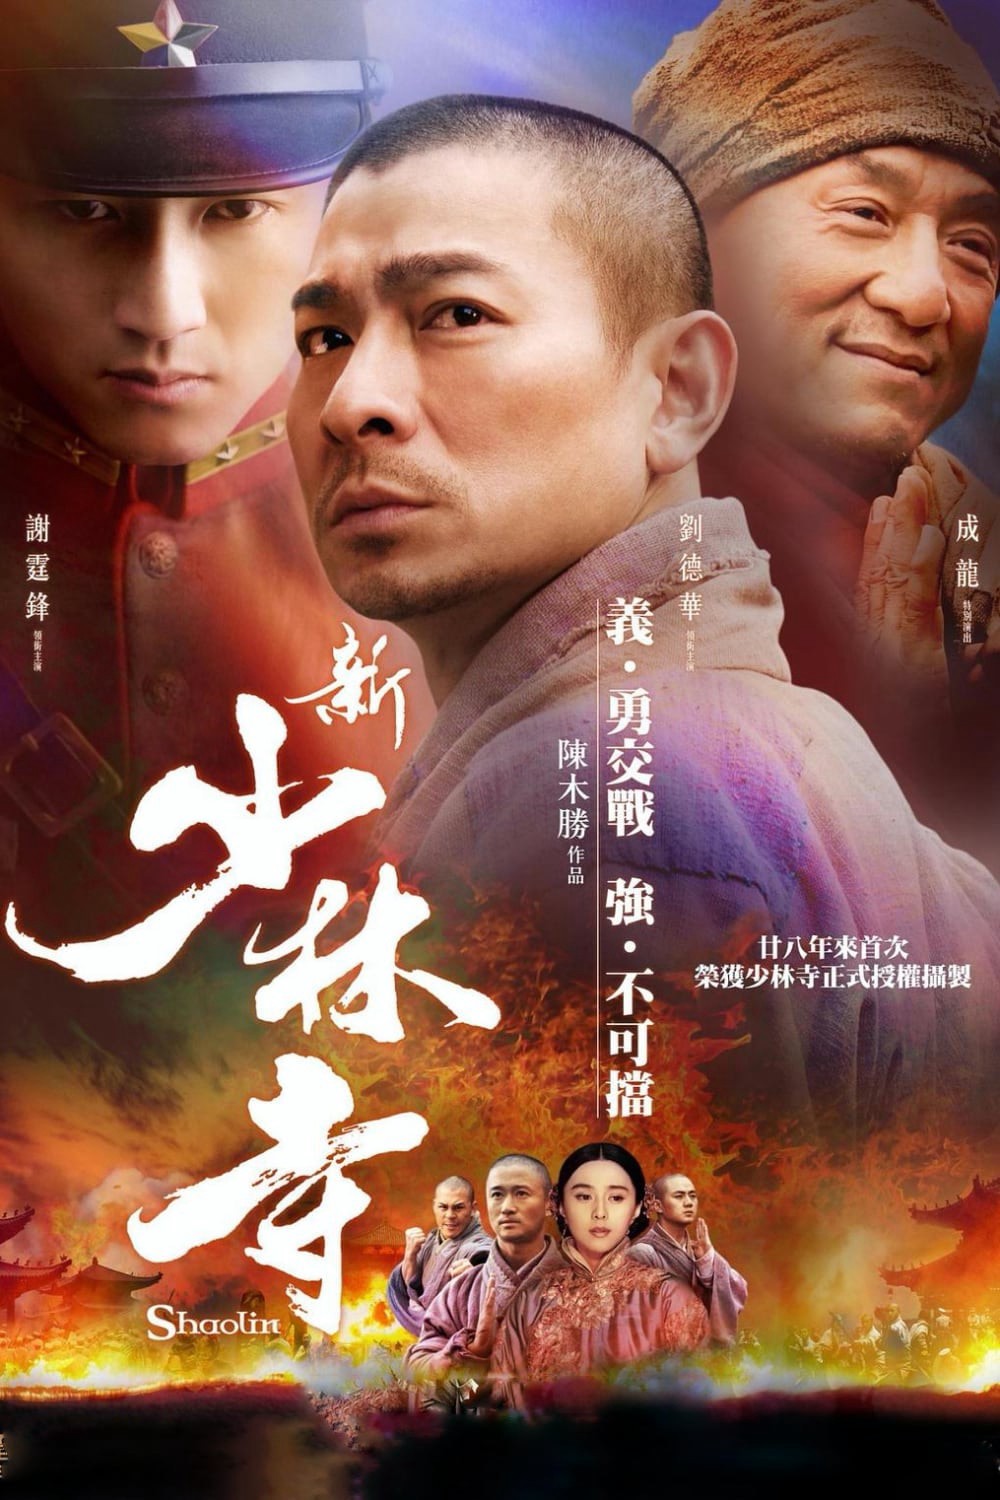 Tân Thiếu Lâm Tự - Shaolin - Tân Thiếu Lâm Tự - Shaolin (2011)